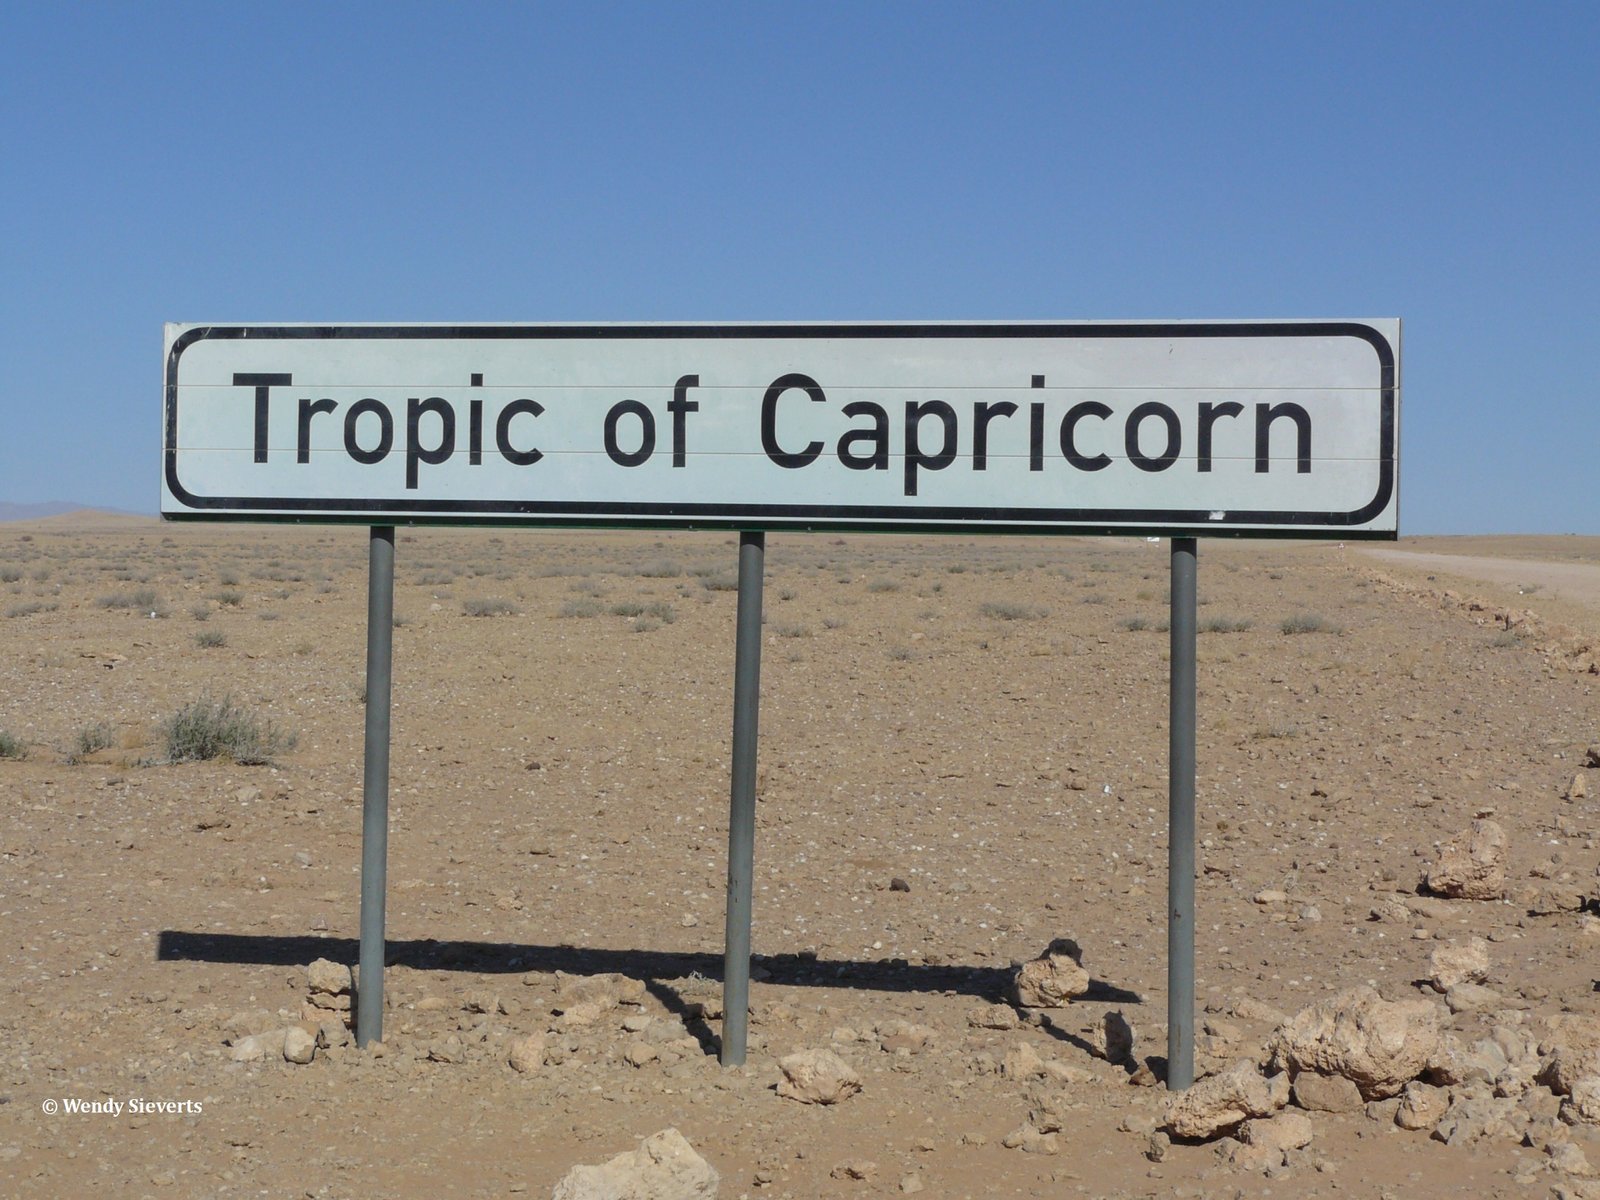 Bord met Tropic of Capricorn of Steenbokskeerkring in Namibië